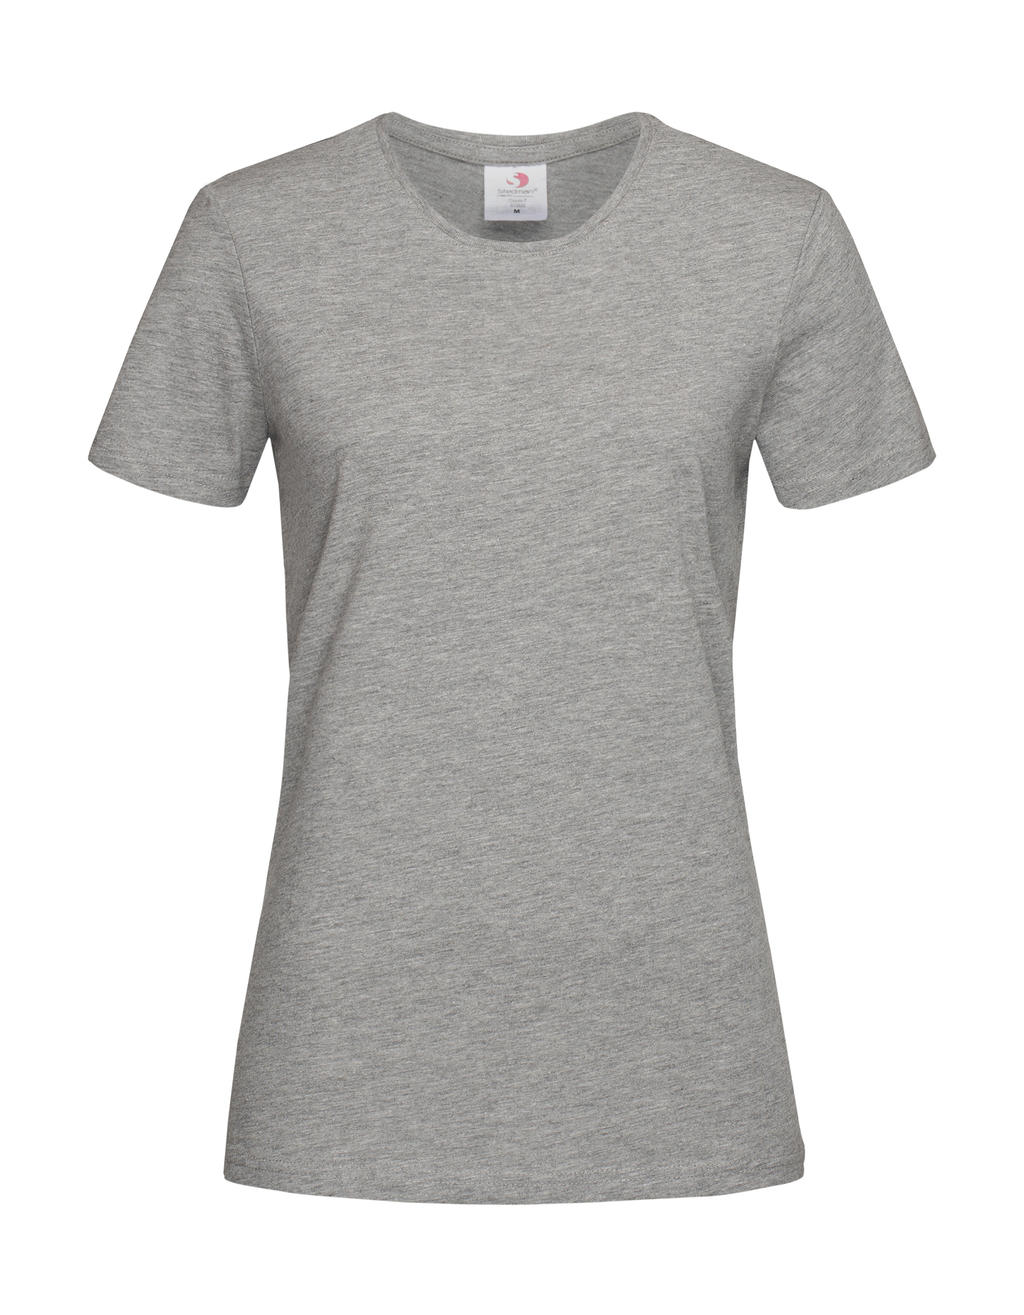 Tričko dámské Stedman Fitted s kulatým výstřihem - šedé-bílé, XS